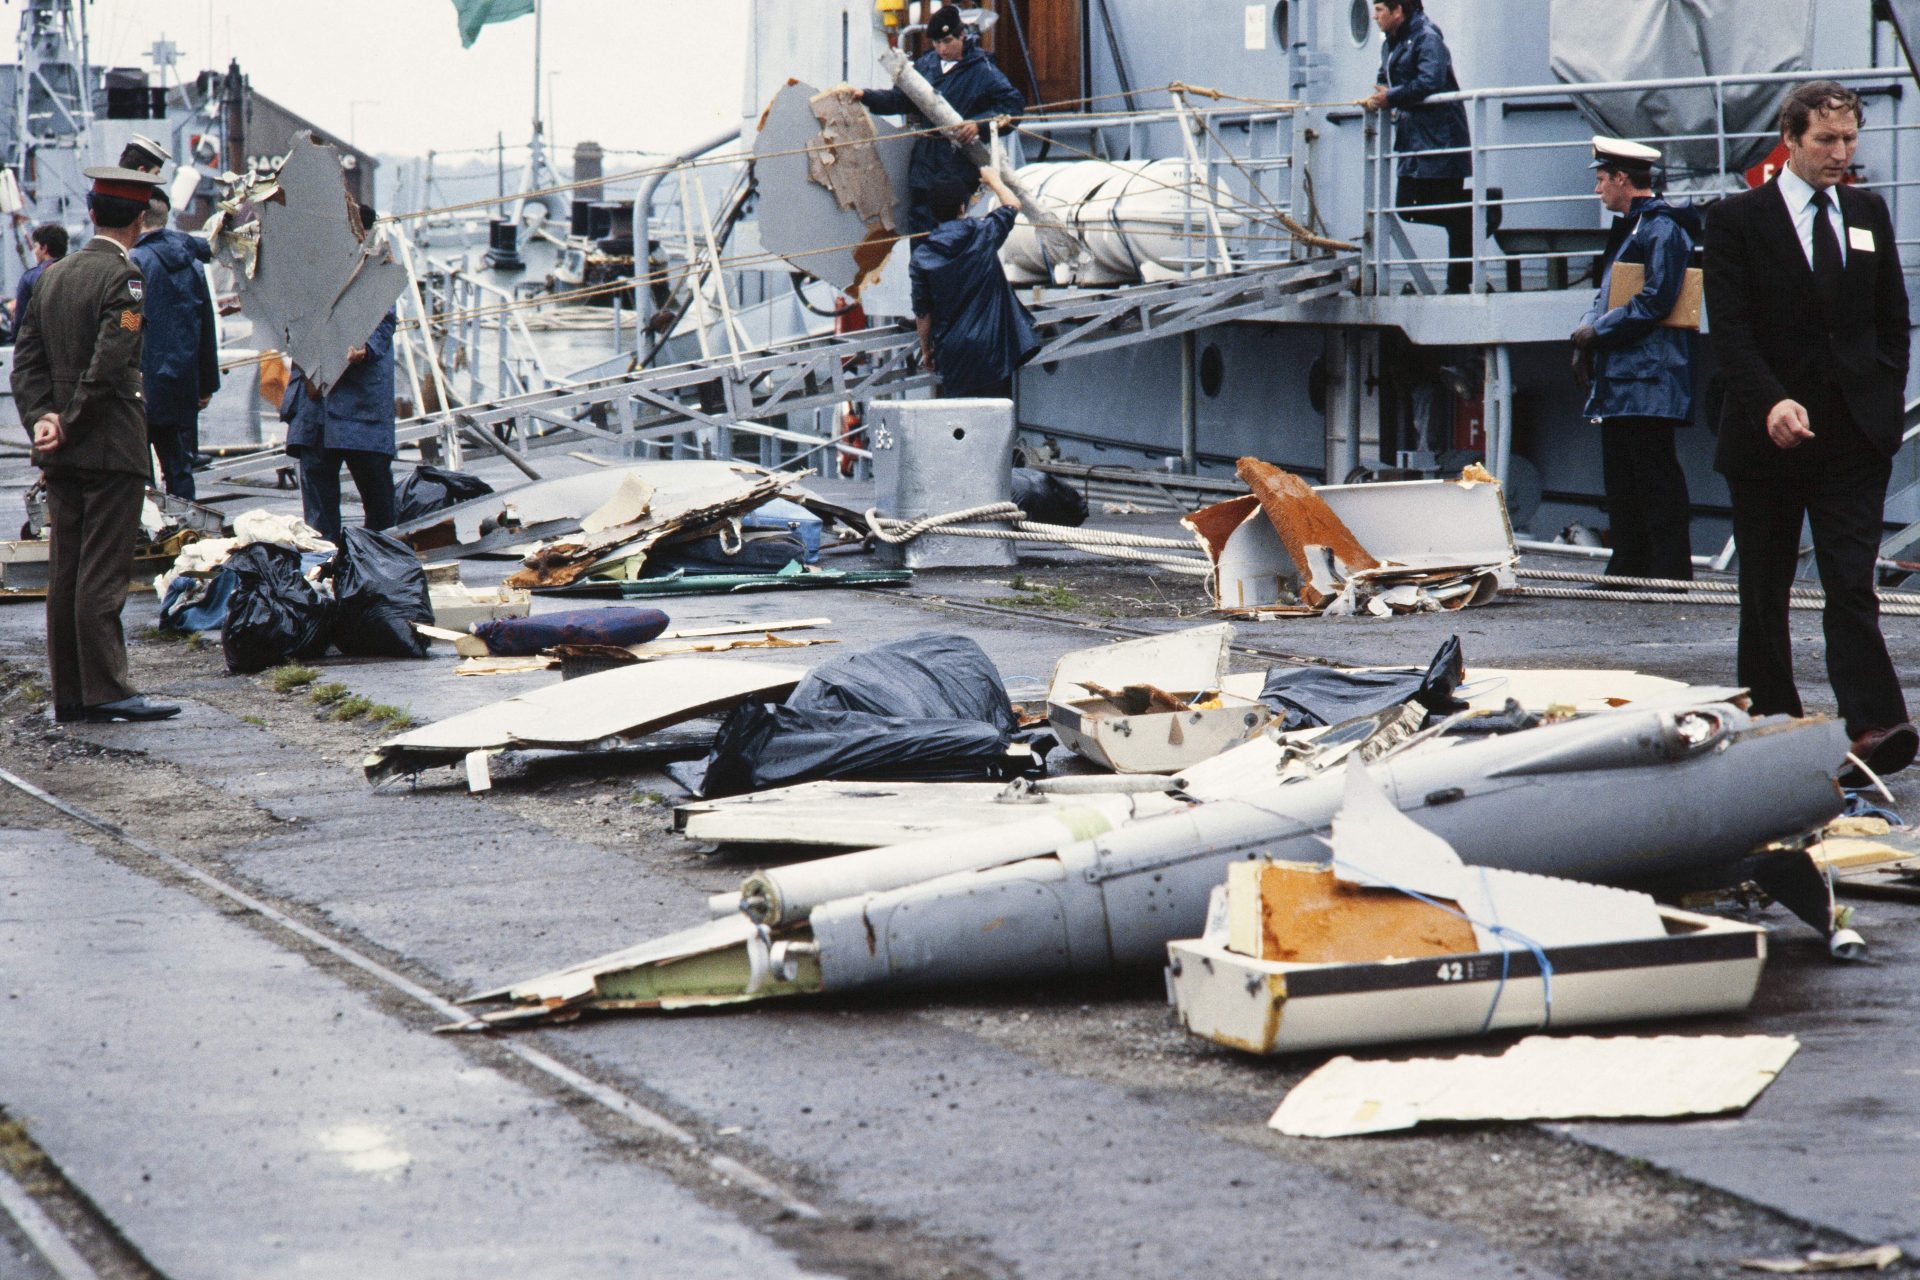 Самая большая авиакатастрофа. Авиакатастрофе Air India 1985. Ирландия, 23 июня 1985, 329 жертв.